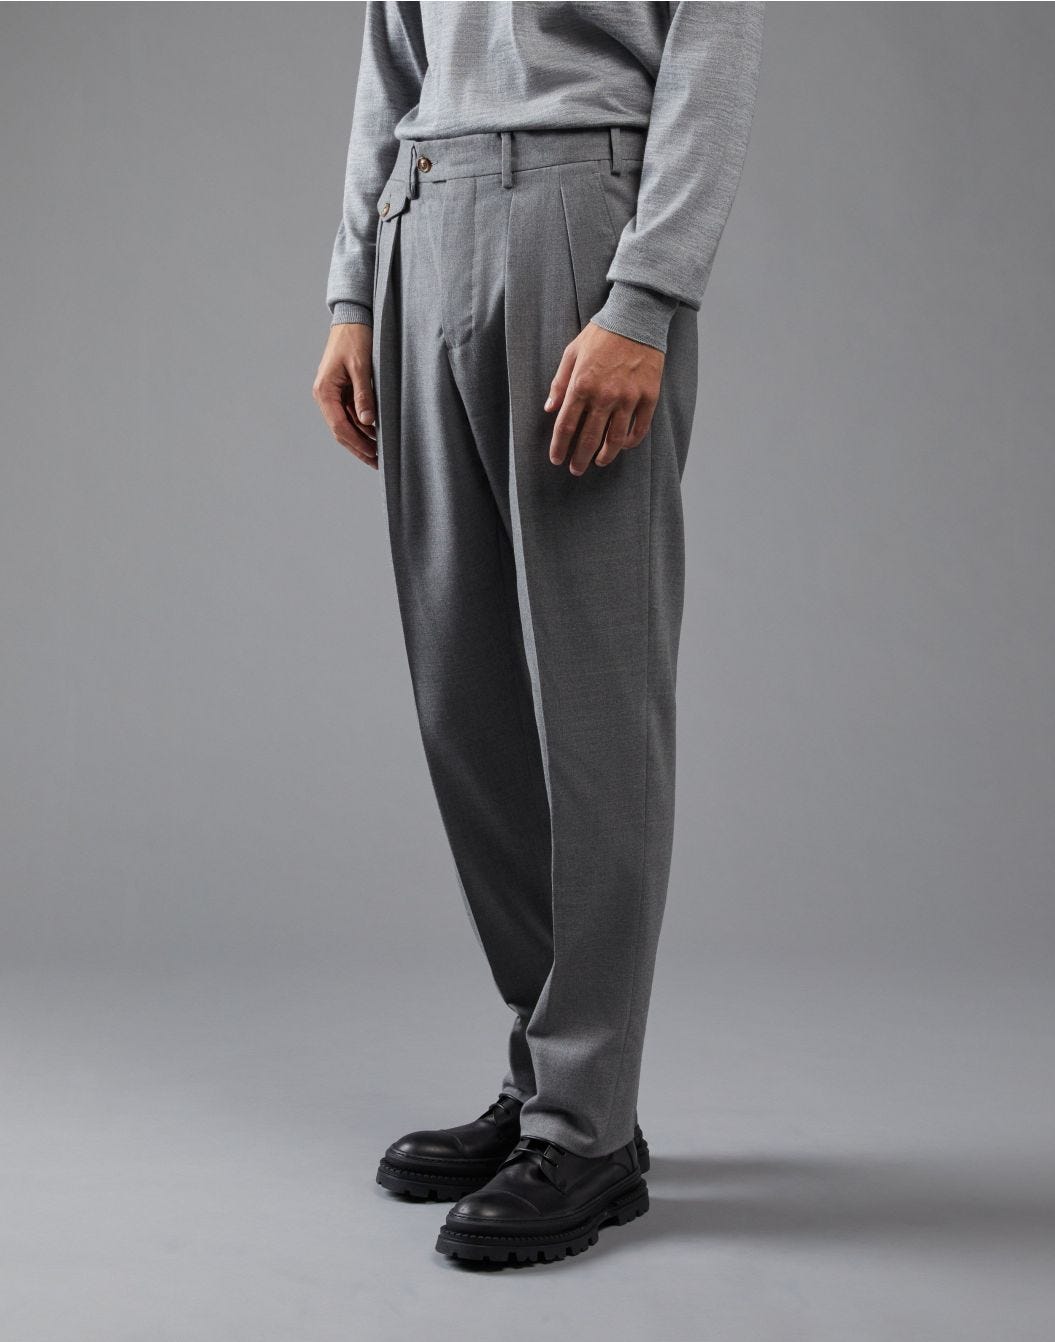 Pantalone grigio